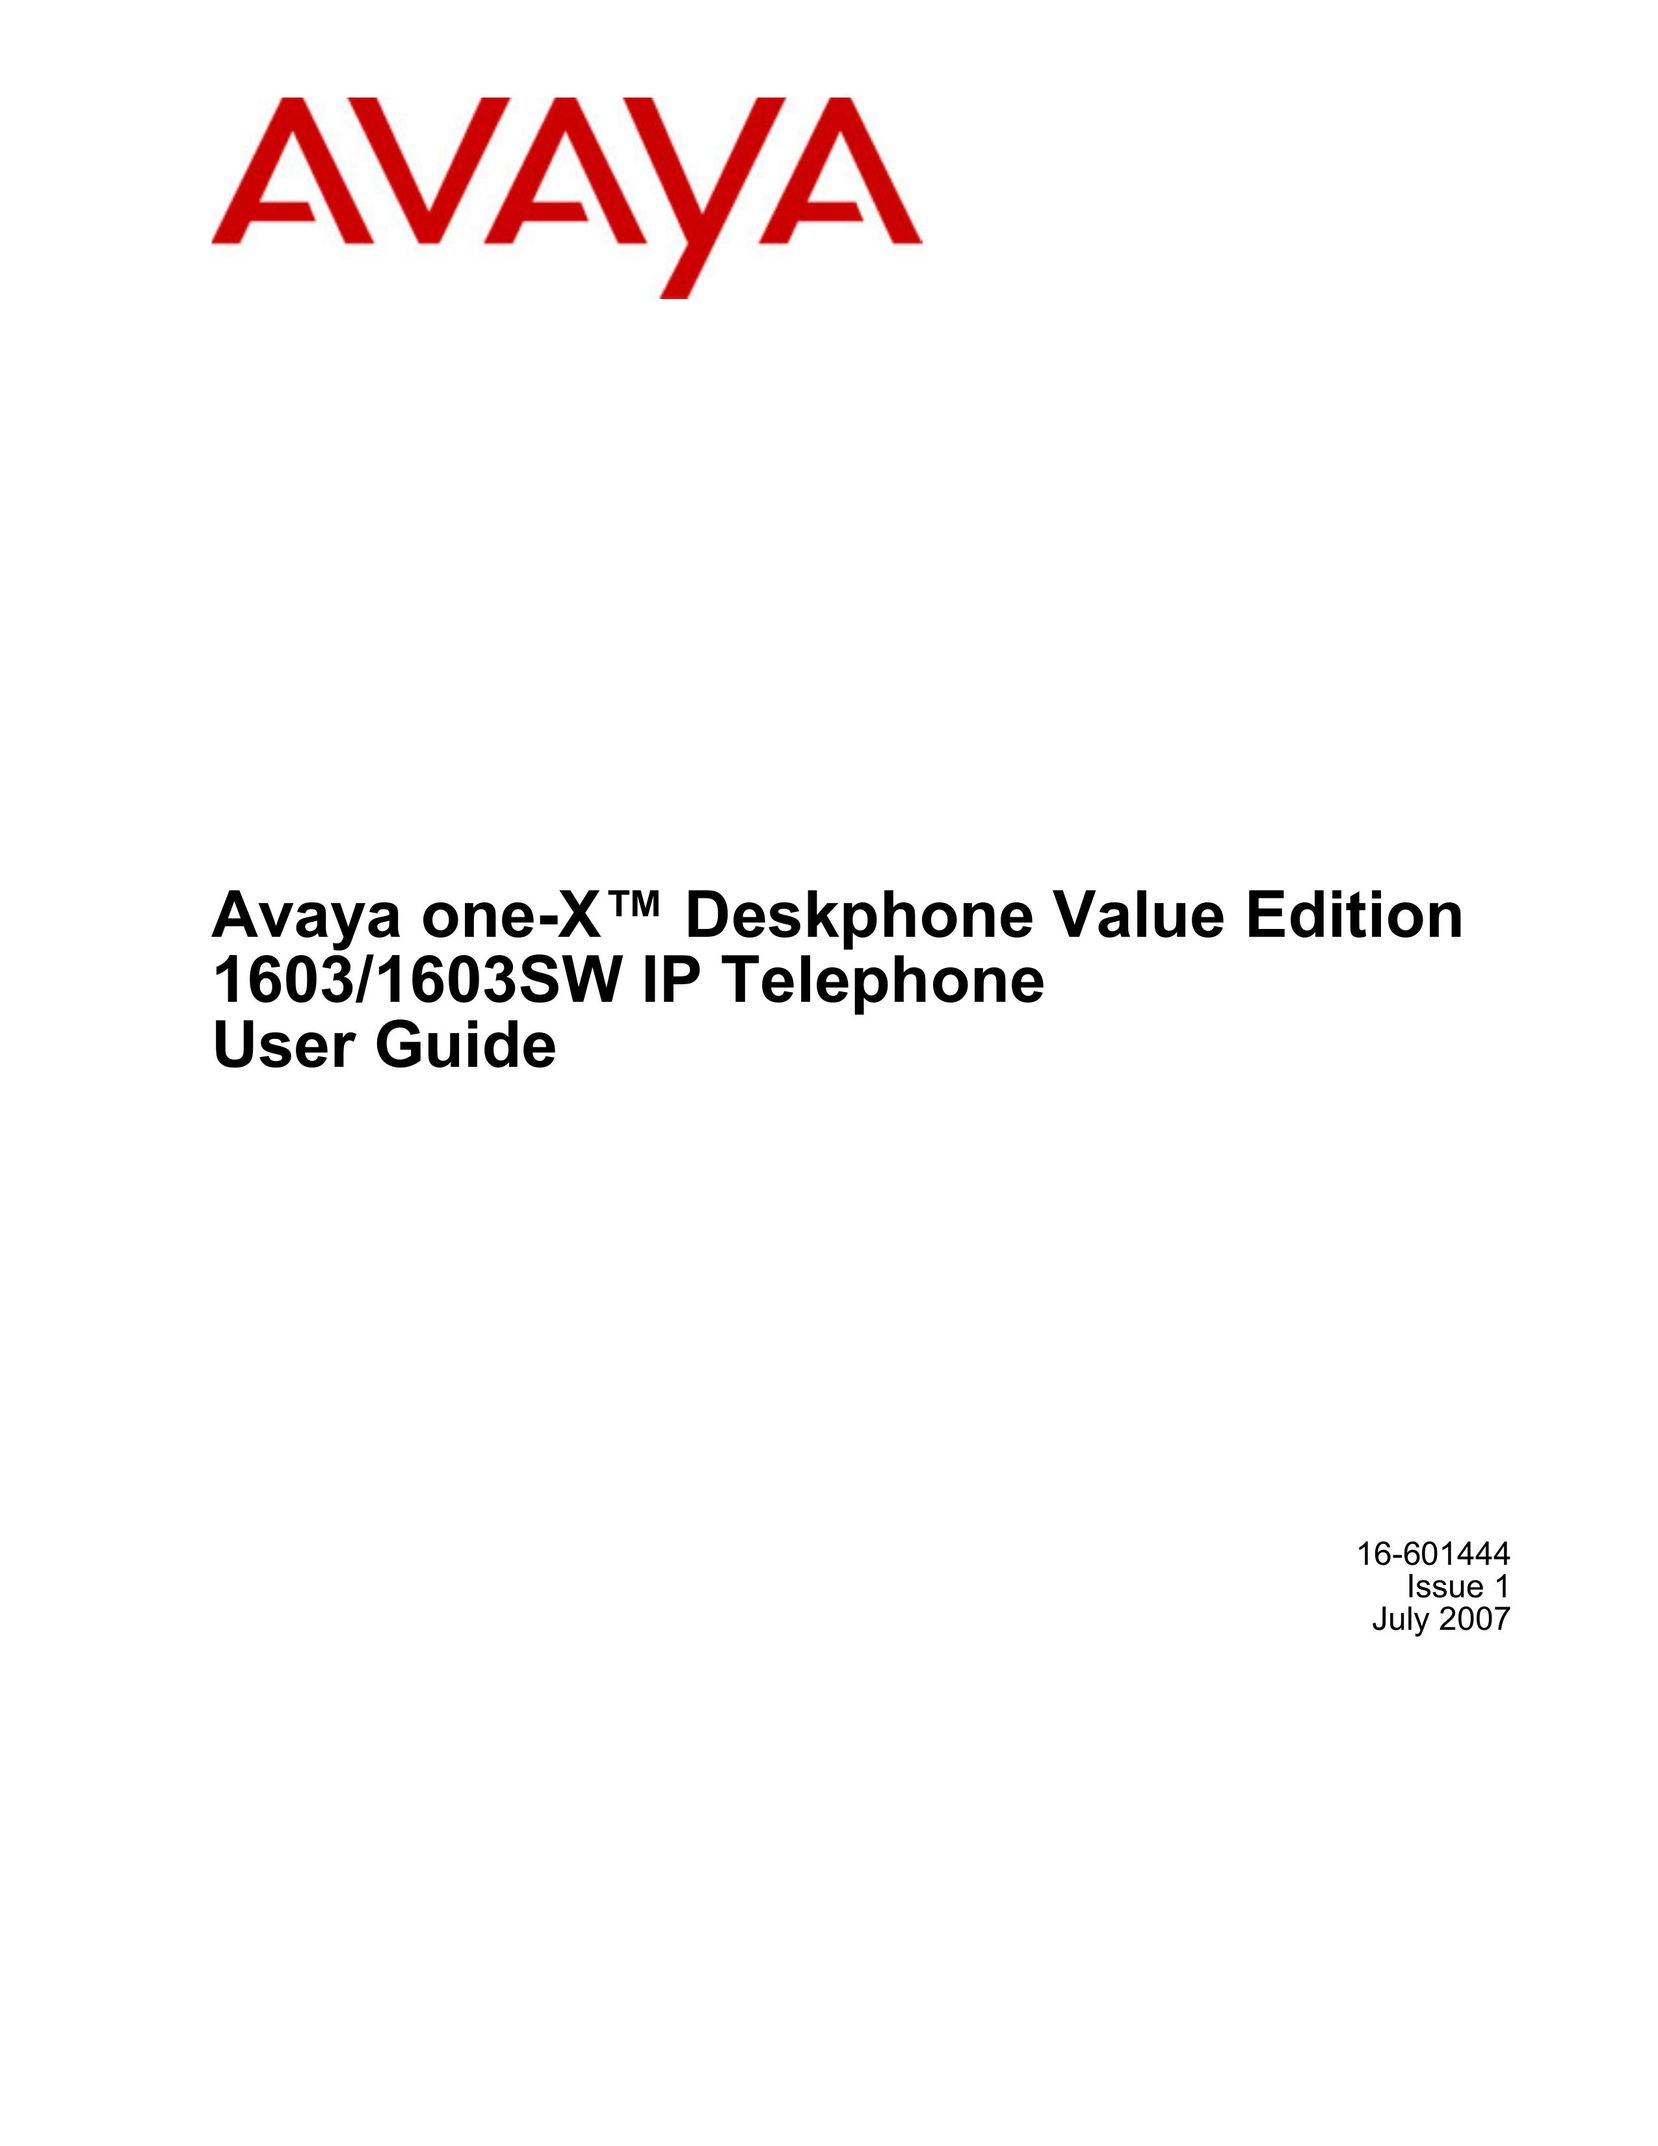 Casio 1603SW IP Phone User Manual